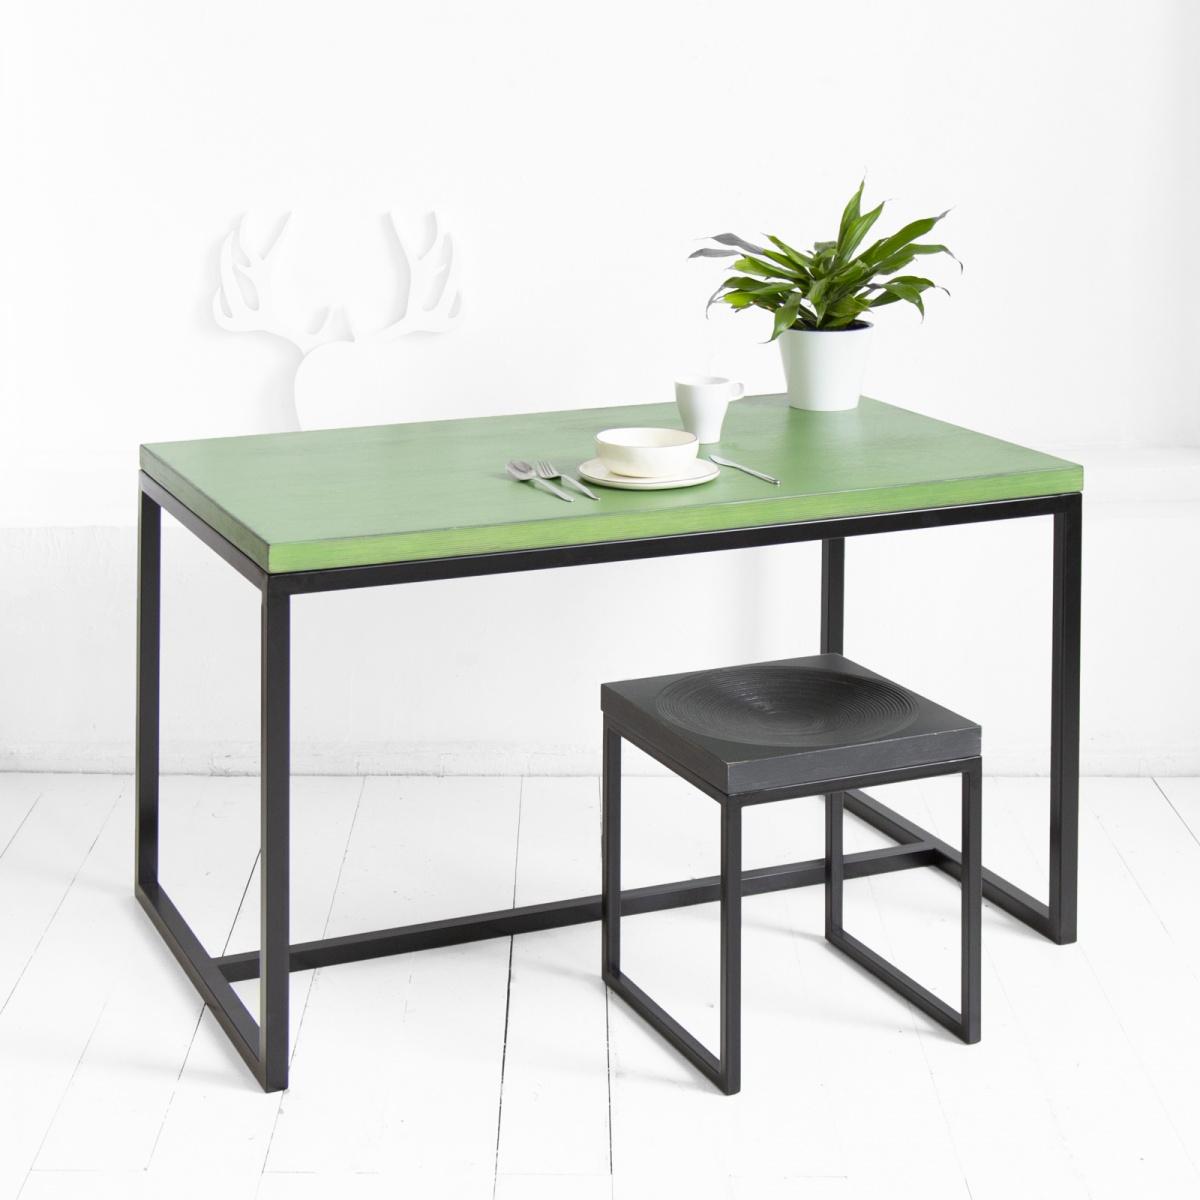 Стол обеденный минимализм фанера-винтажный зеленый archpole